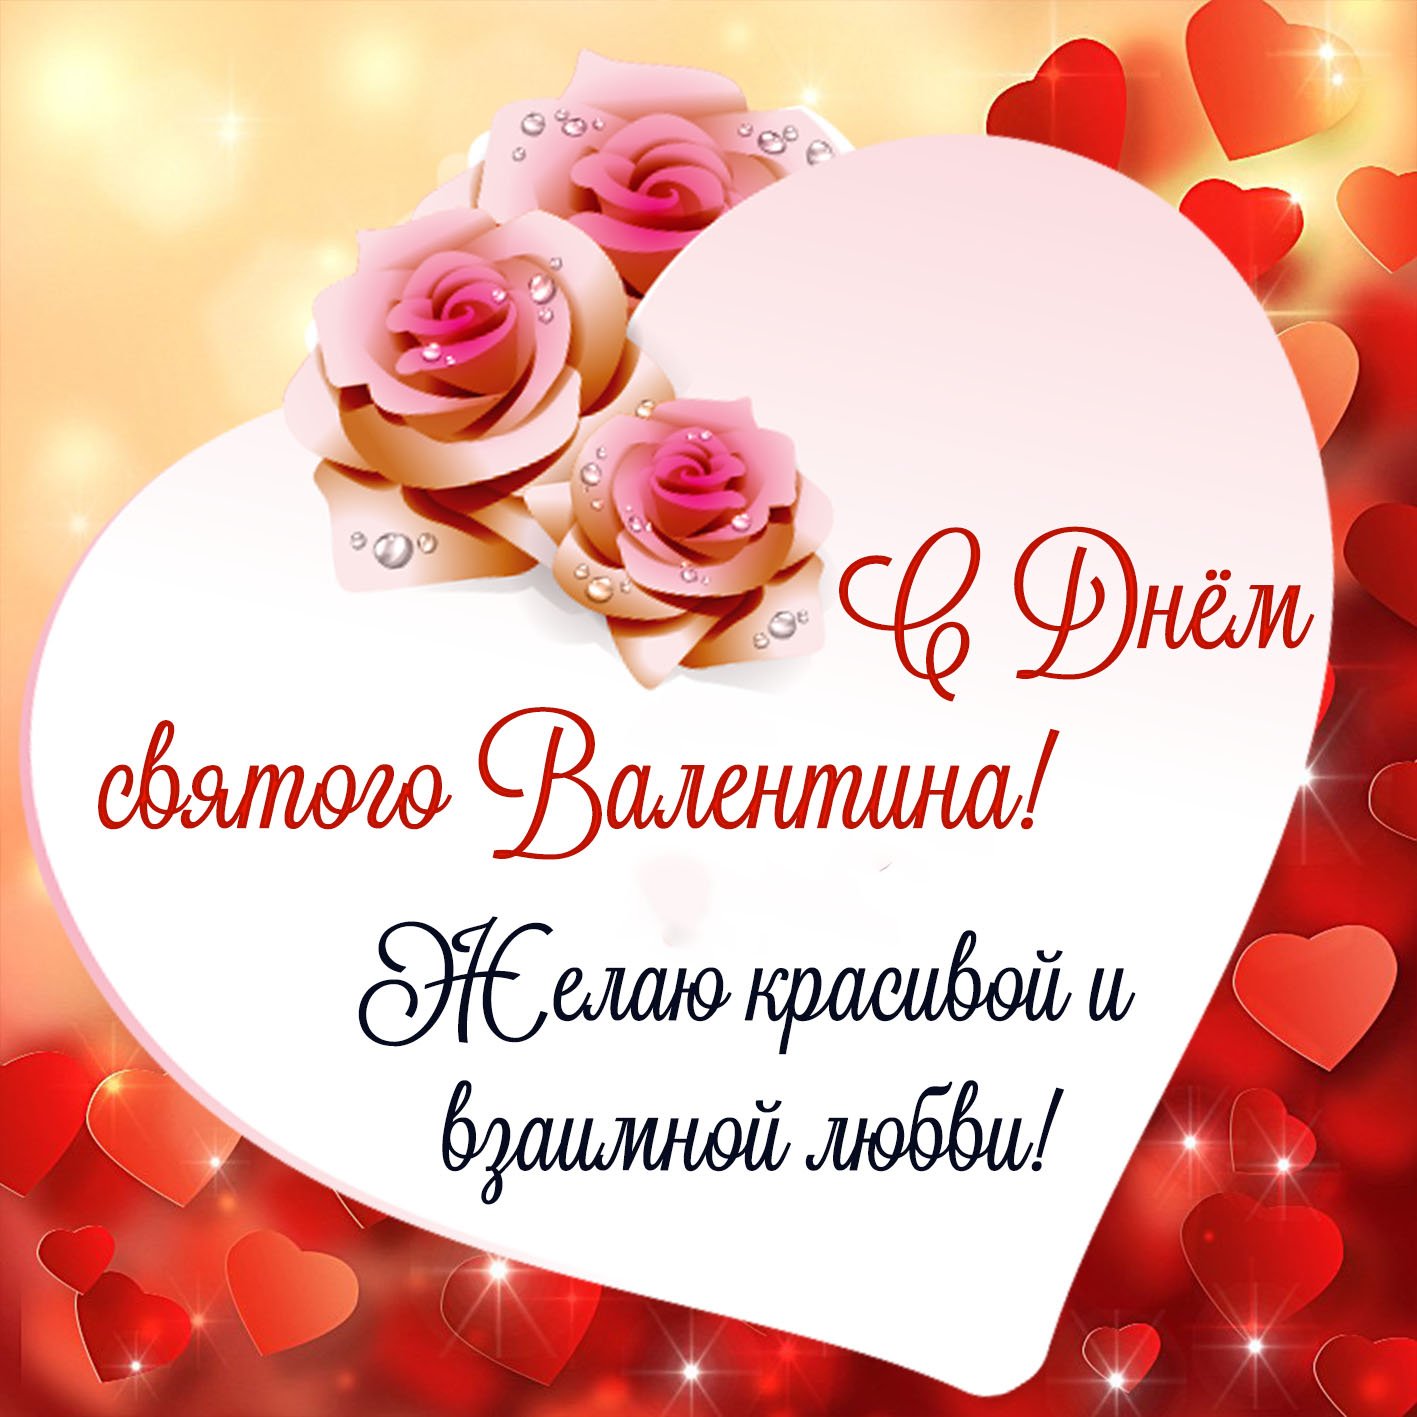 Валентинки на 14 февраля и лучшие поздравления с романтическим праздником